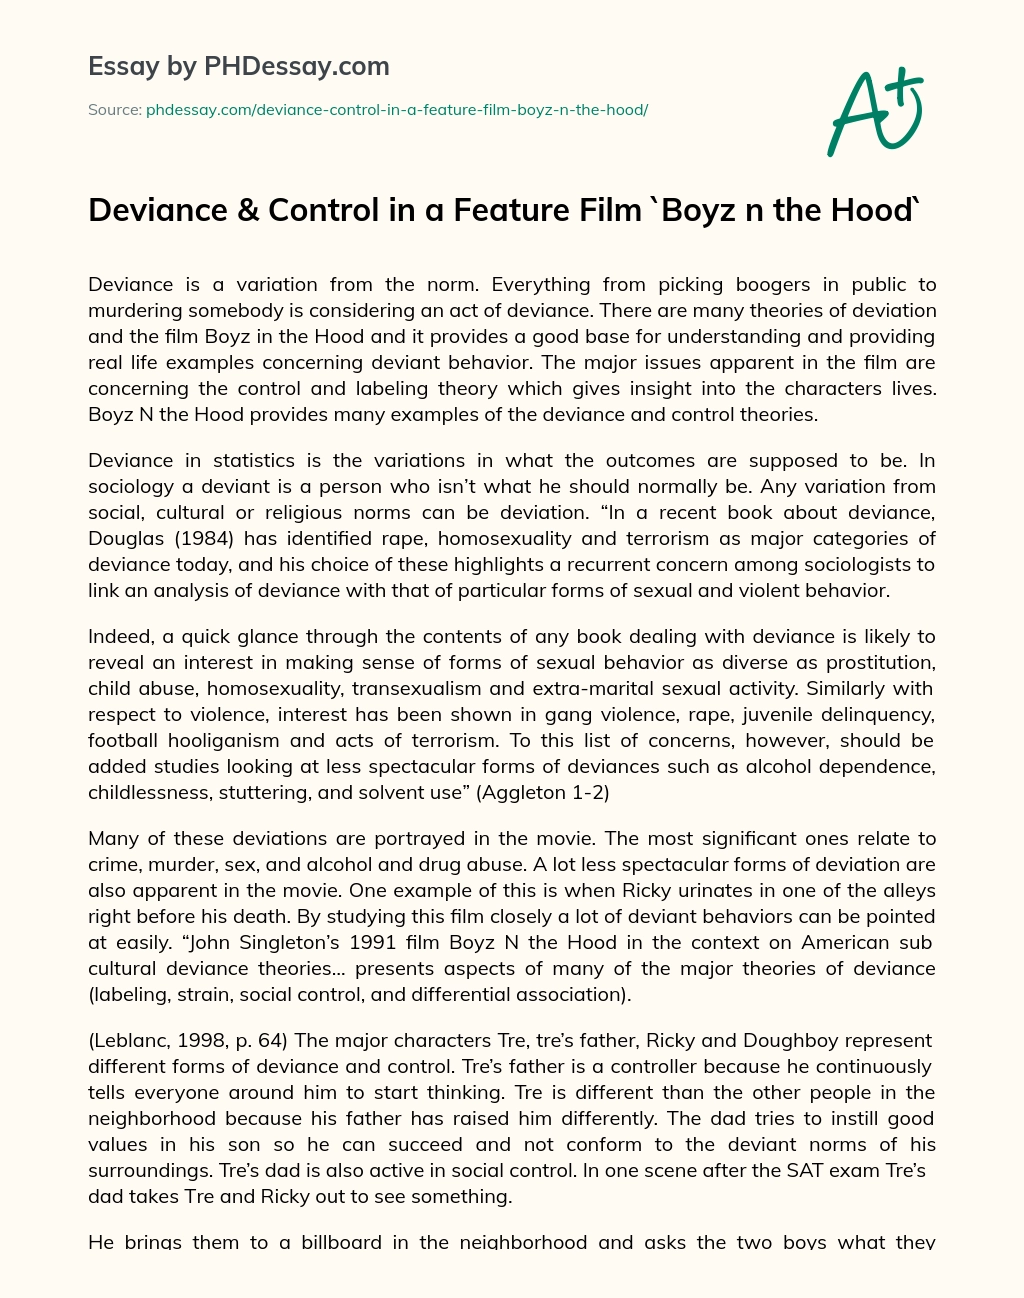 Deviance & Control in a Feature Film `Boyz n the Hood` essay